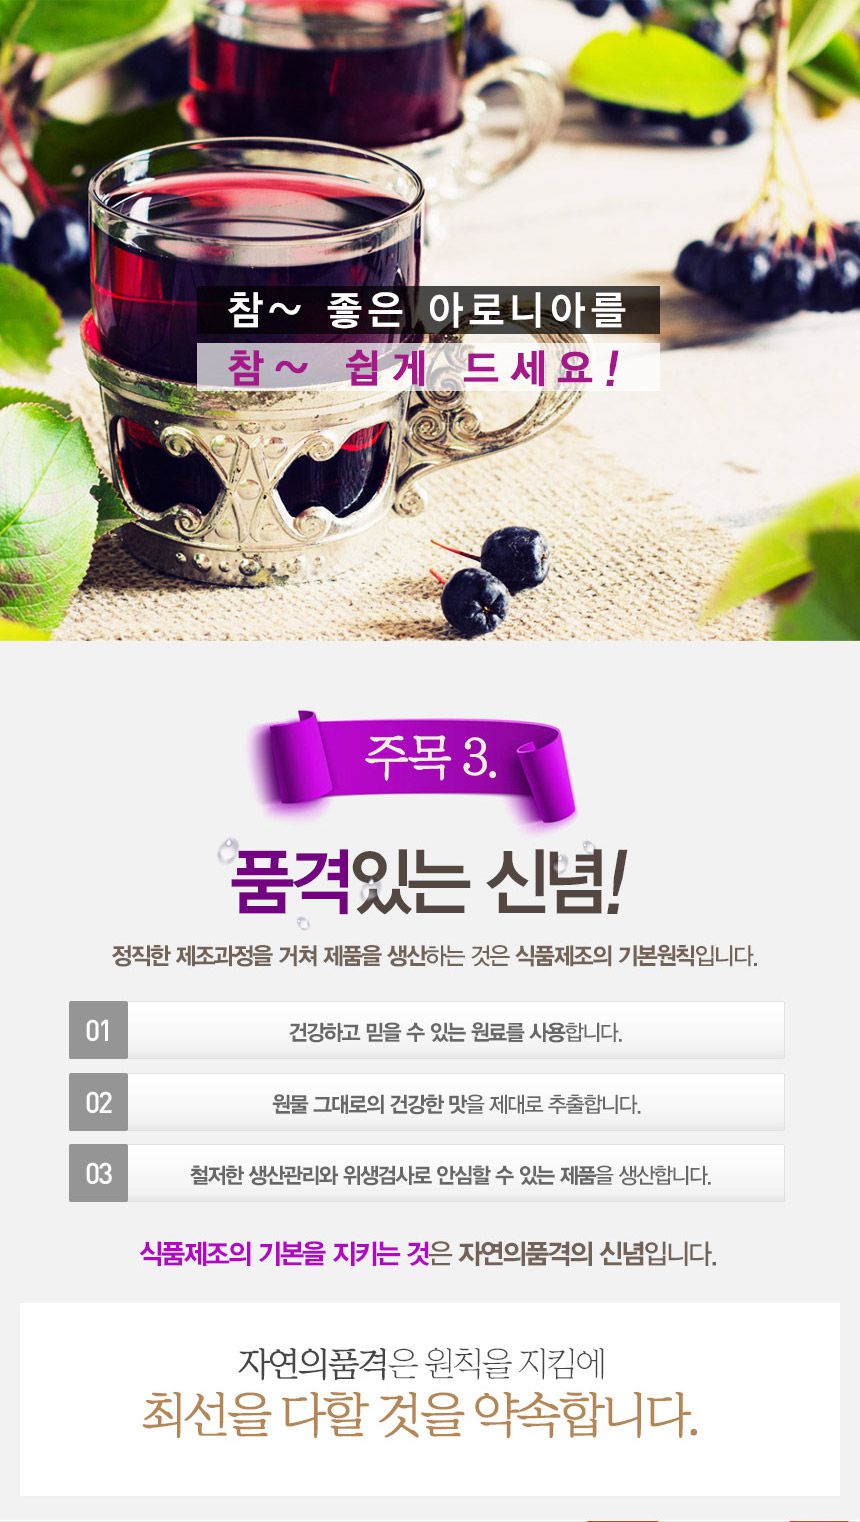 韓國食品-[GNM] 野櫻莓汁 70ml X30 (預防糖尿病)